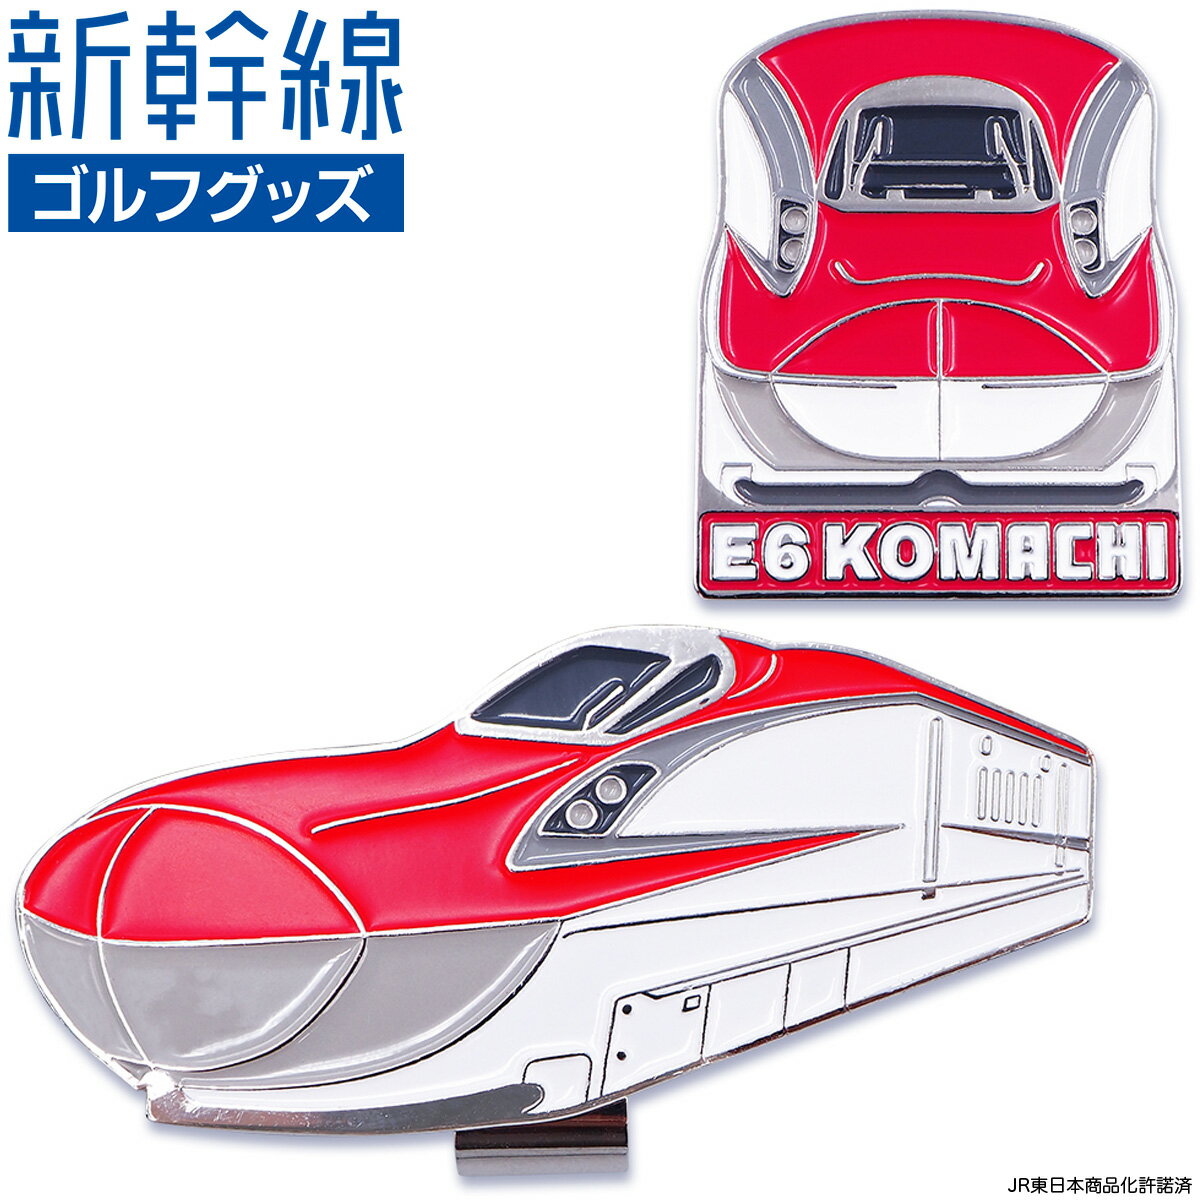 新幹線 E6系 こまち E6 KOMACHI ゴルフマーカー ( クリップタイプ ) 「 SKSM004 」 【あす楽対応】